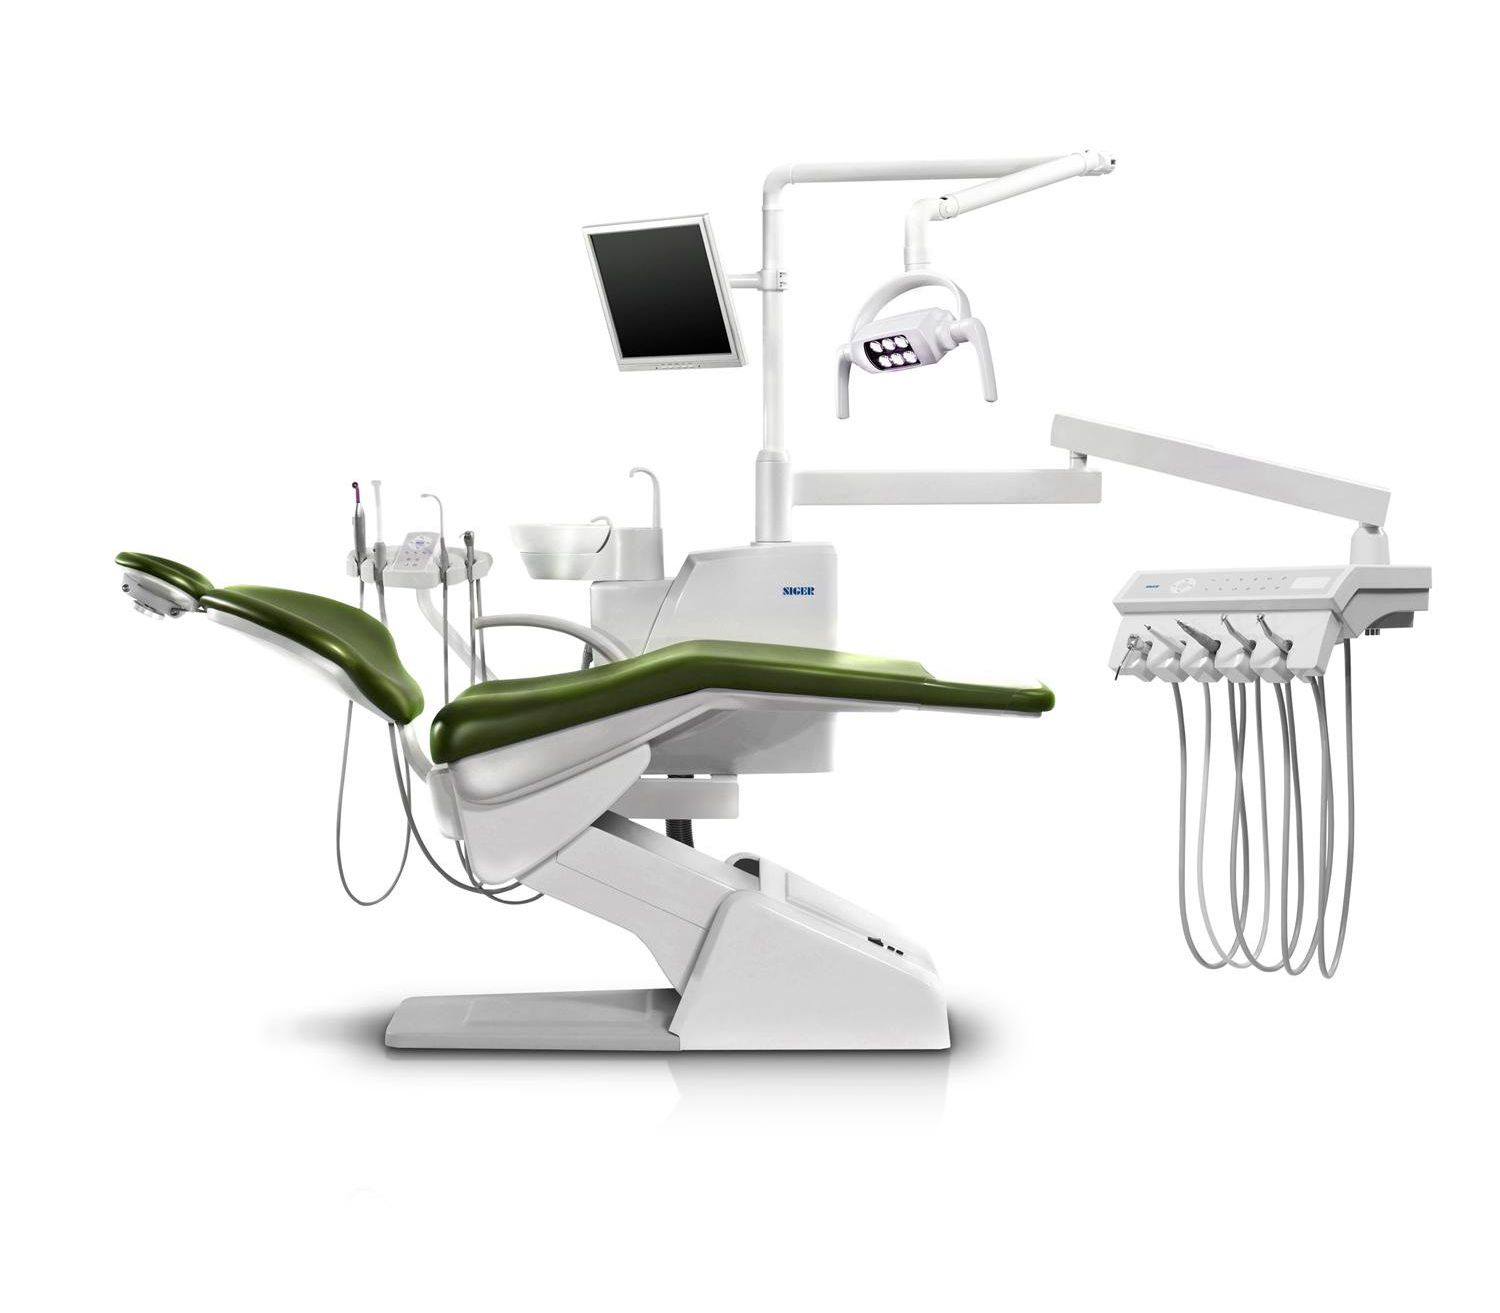 Siger U200 - стоматологическая установка с верхней подачей инструментов, с сенсорной панелью